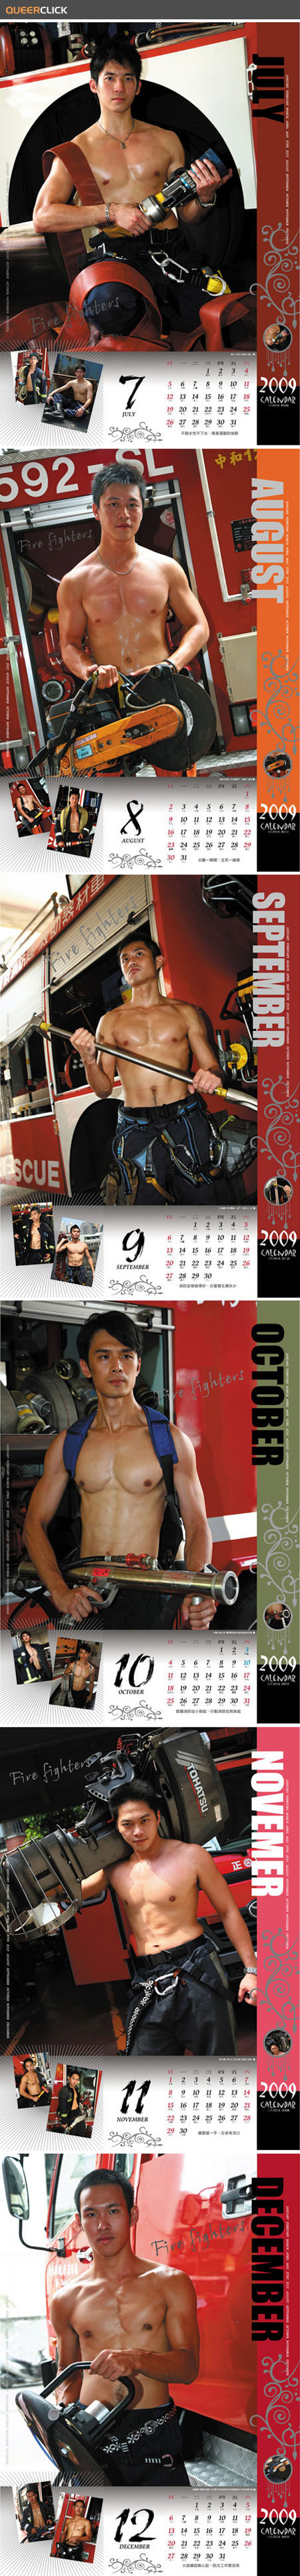 2009 Asian Firefighter Calendar